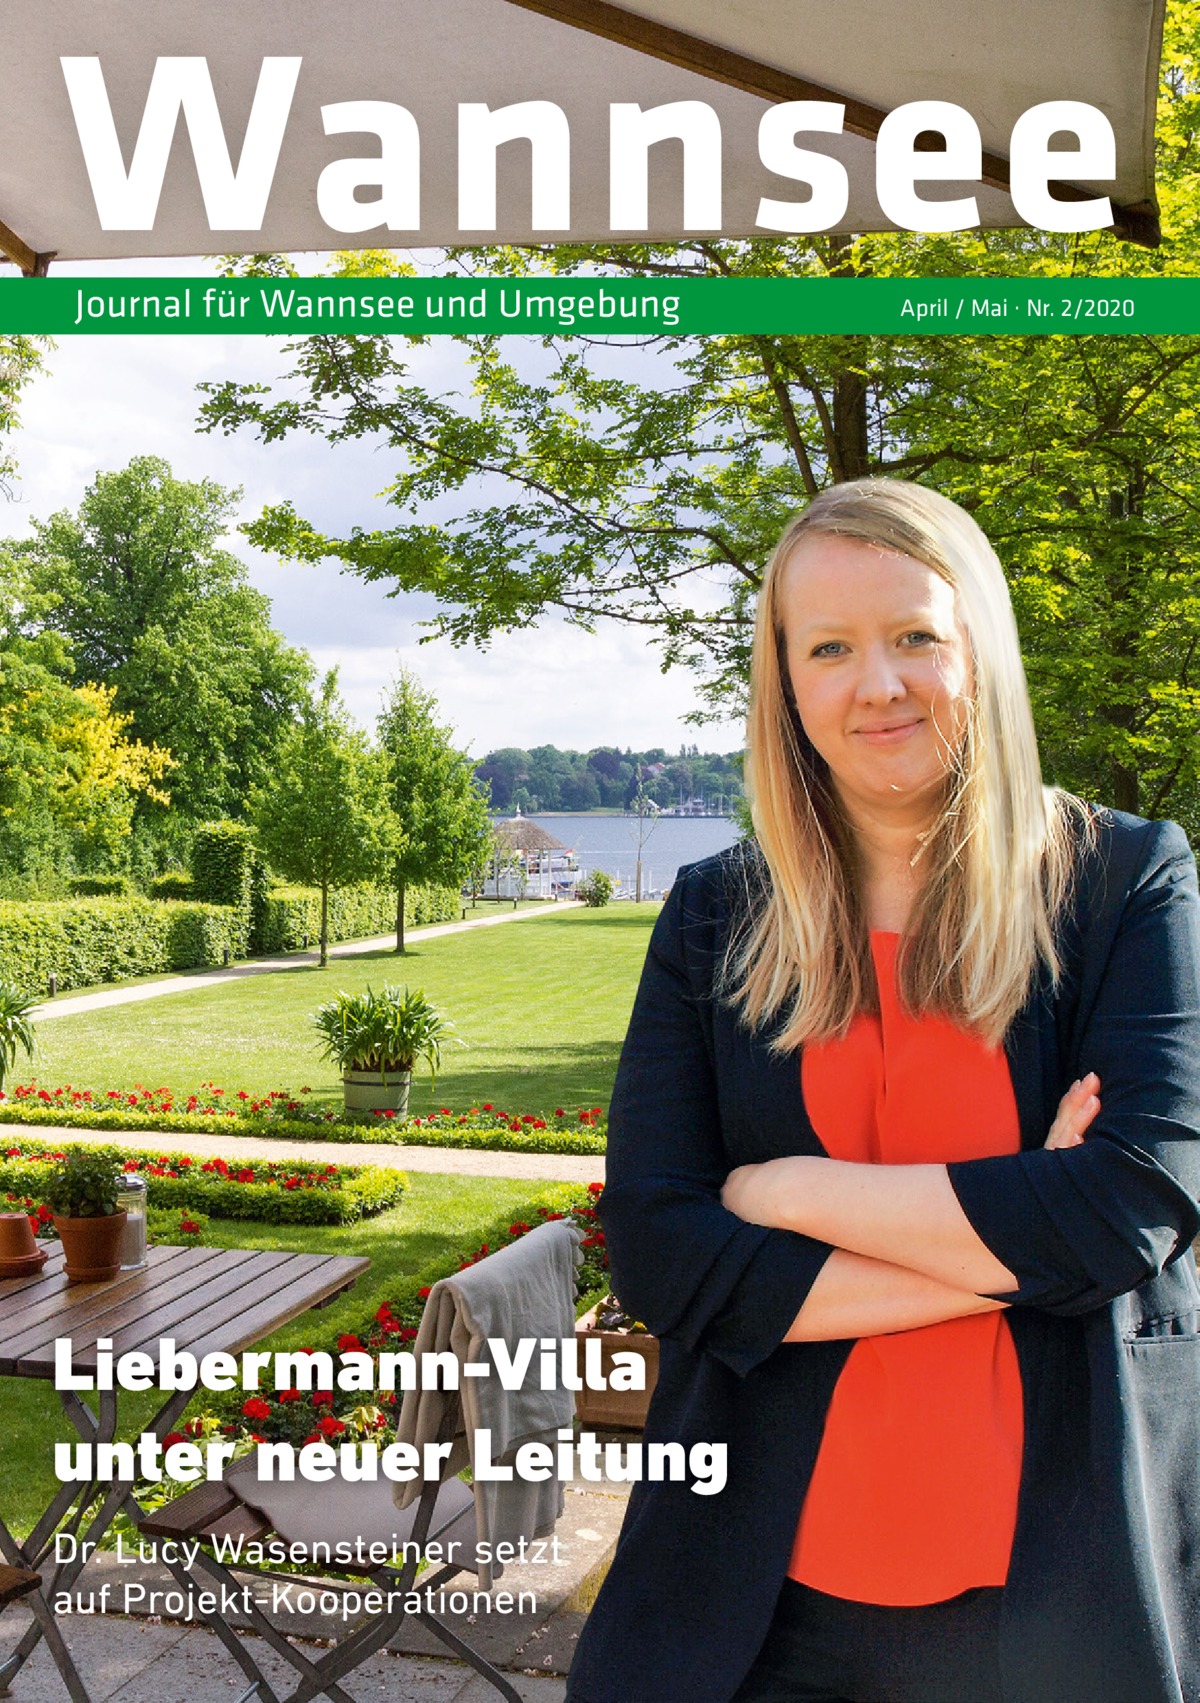 Wannsee Journal für Wannsee und Umgebung  Liebermann-Villa unter neuer Leitung Dr. Lucy Wasensteiner setzt auf Projekt-Kooperationen  April / Mai · Nr. 2/2020